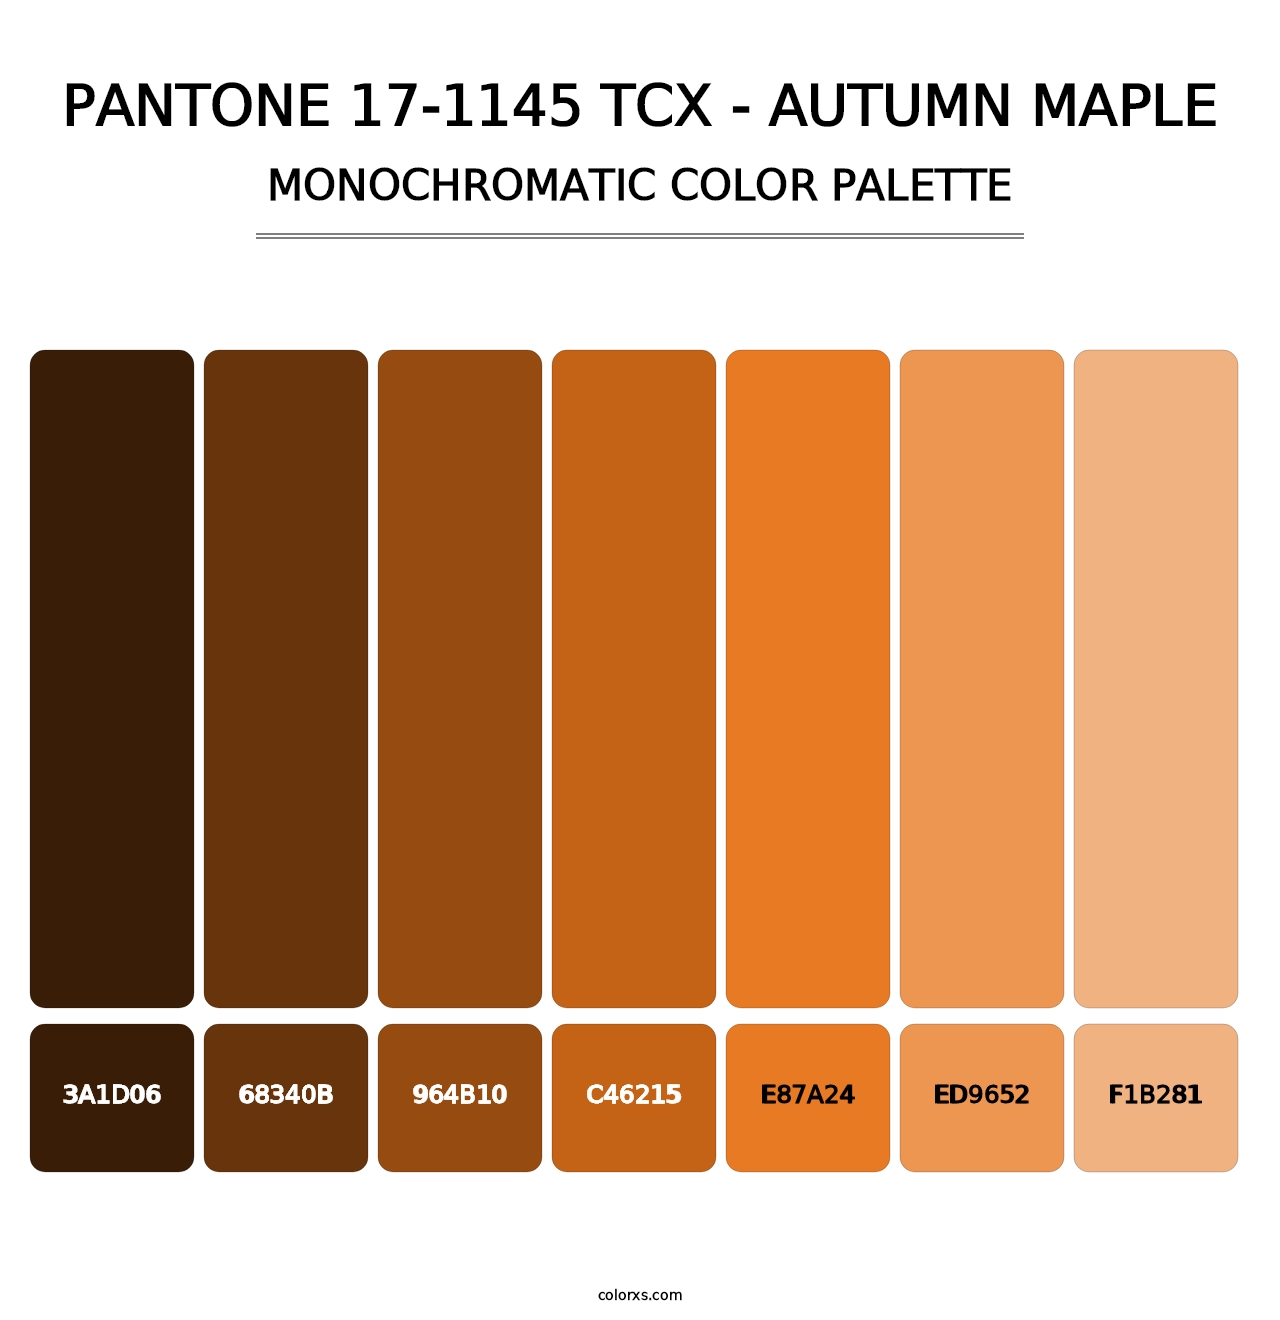 PANTONE 17-1145 TCX - Autumn Maple - Monochromatic Color Palette